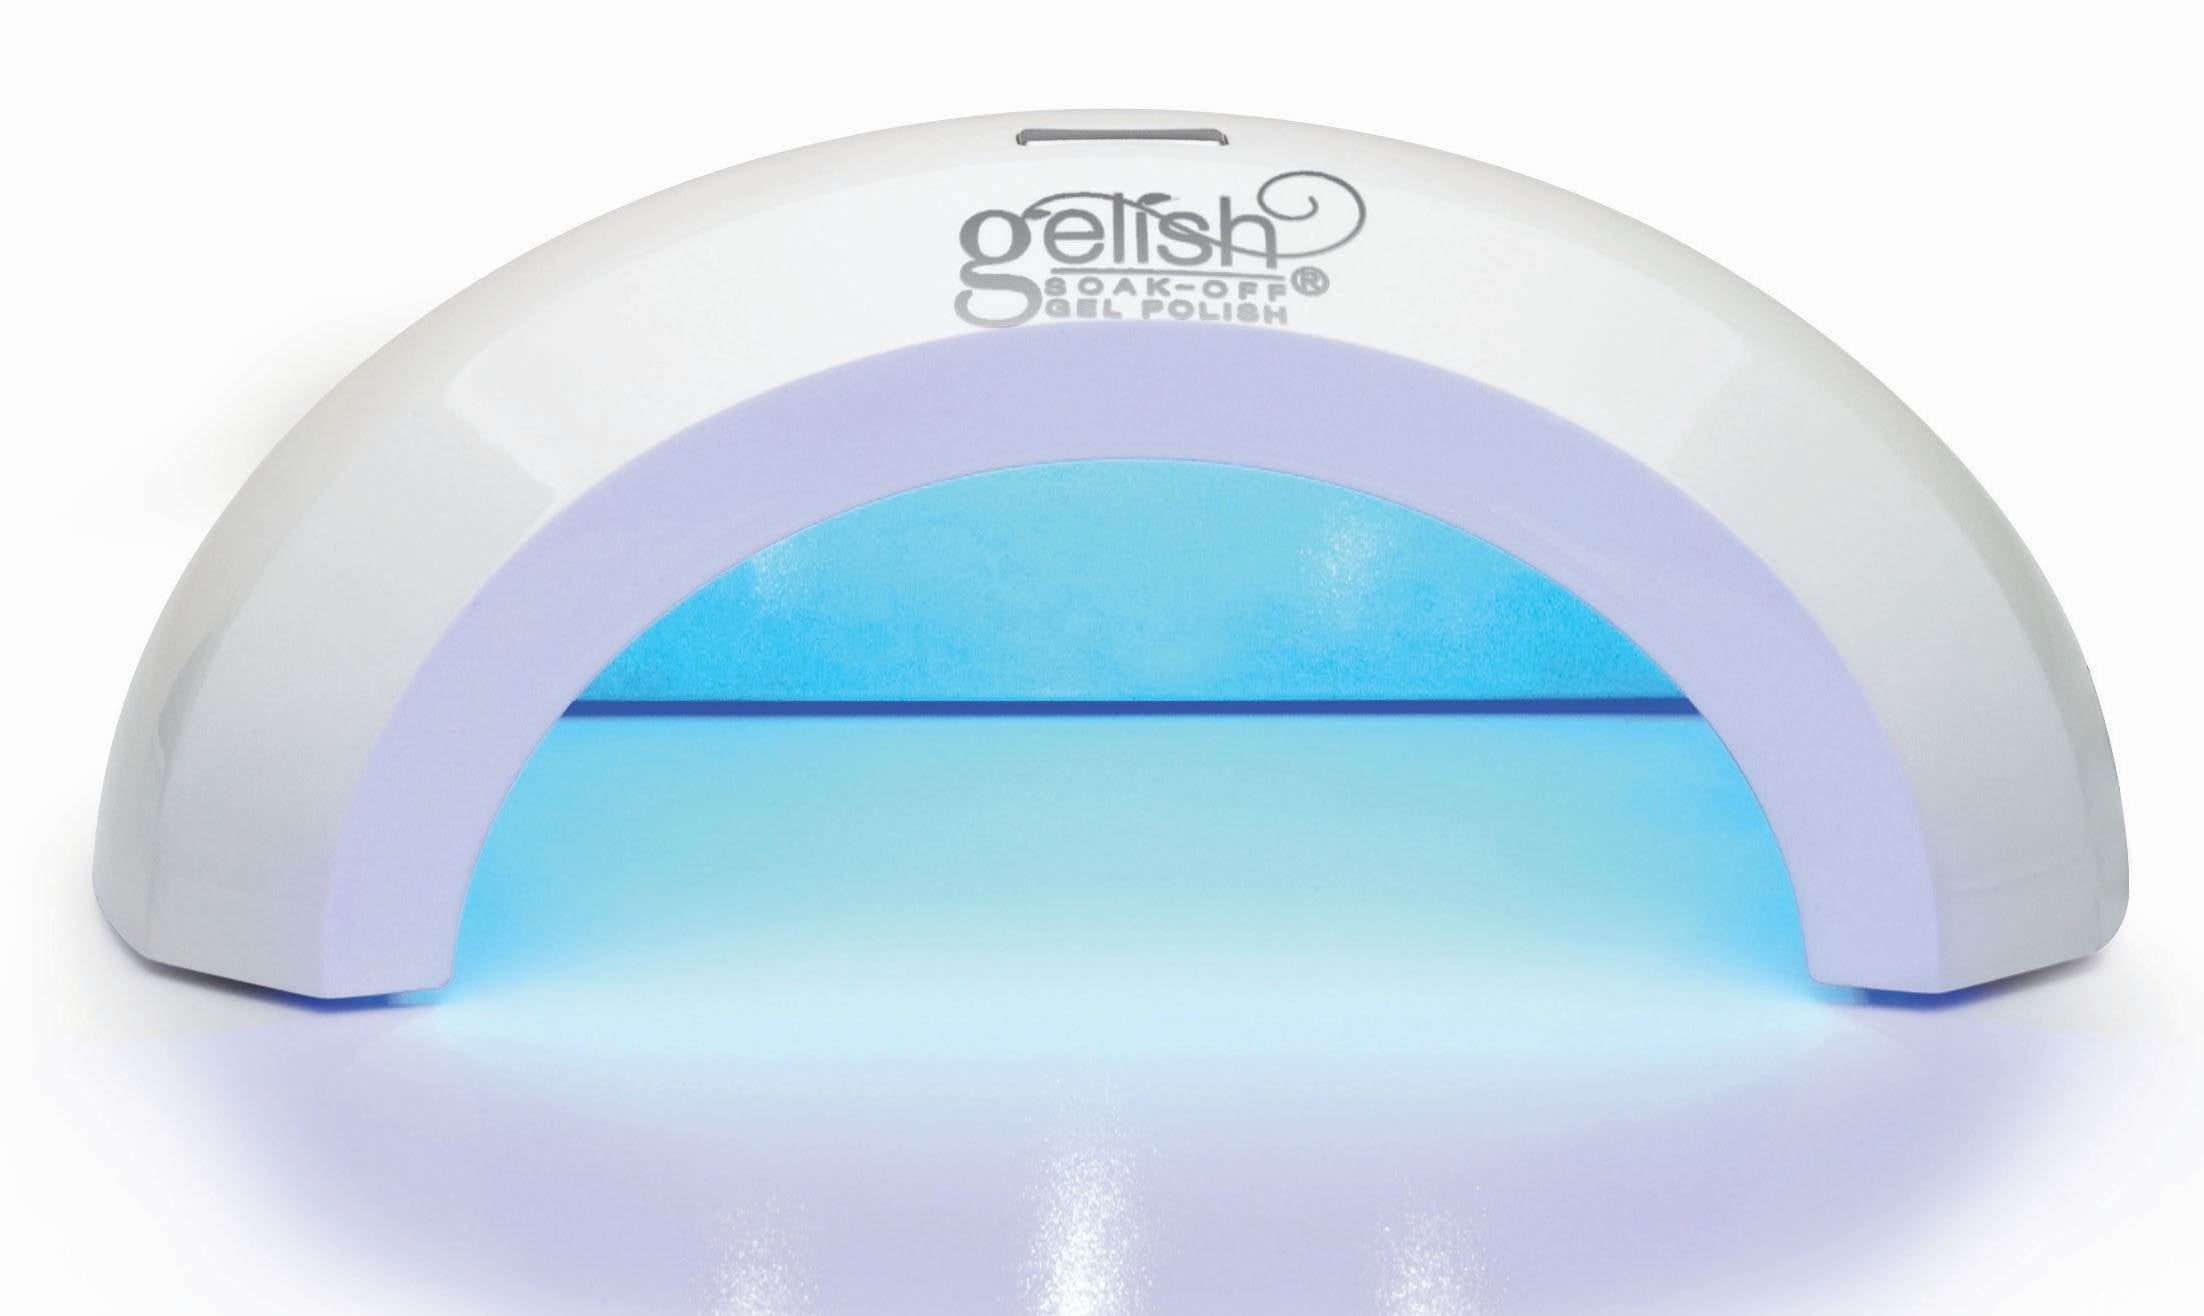 Gelish Mini Pro 45 Second LED Curing Gel Soak Nail Polish Light Lamp (2